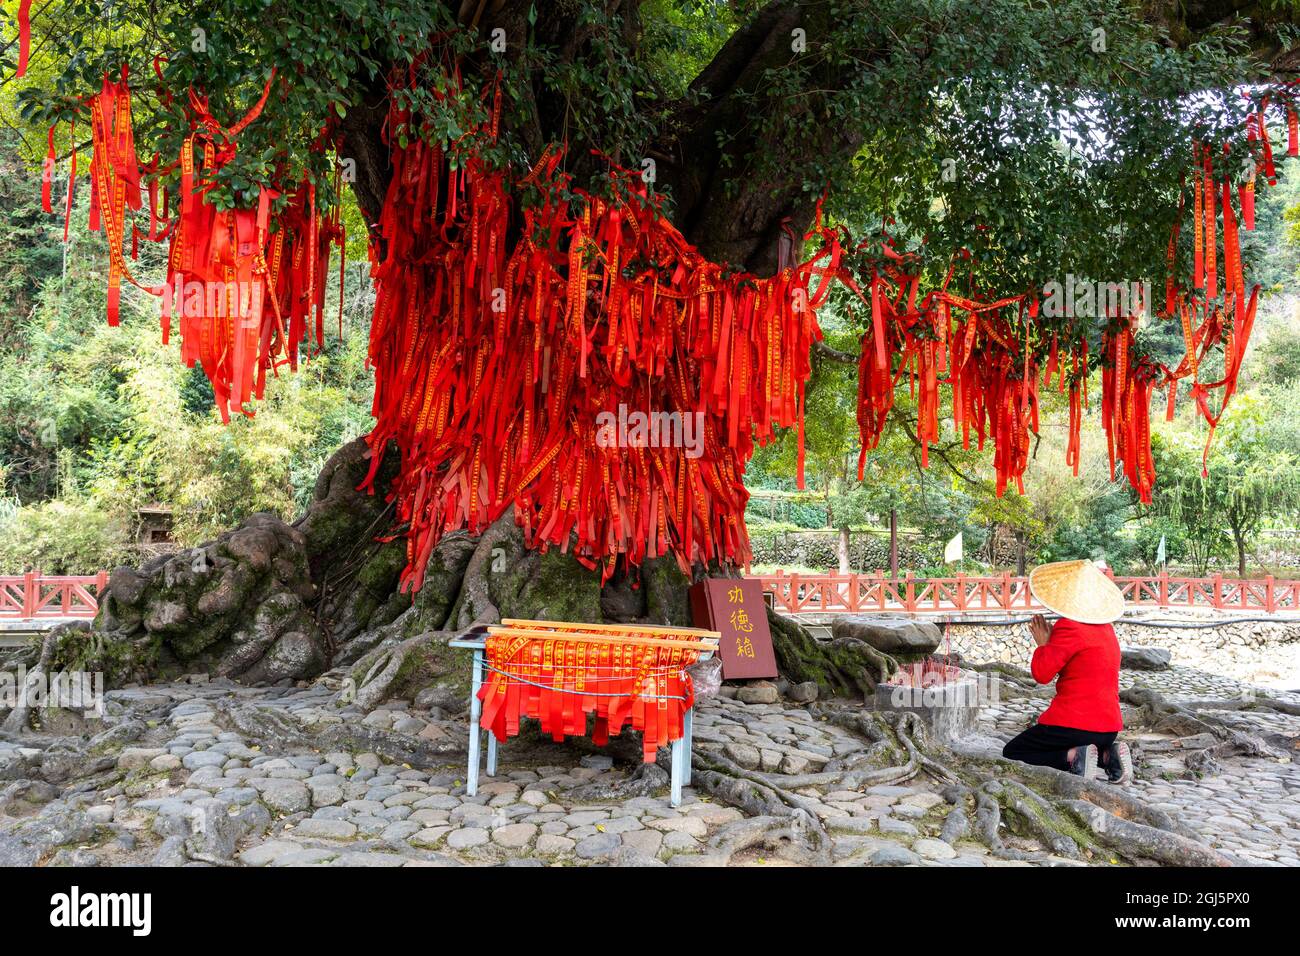 Chine, province de Fujian, comté de Yongding, Yongding Tulou. La zone à l'extérieur de la maison ronde contient un arbre sacré festooné avec des rubans rouges de voeu. Banque D'Images